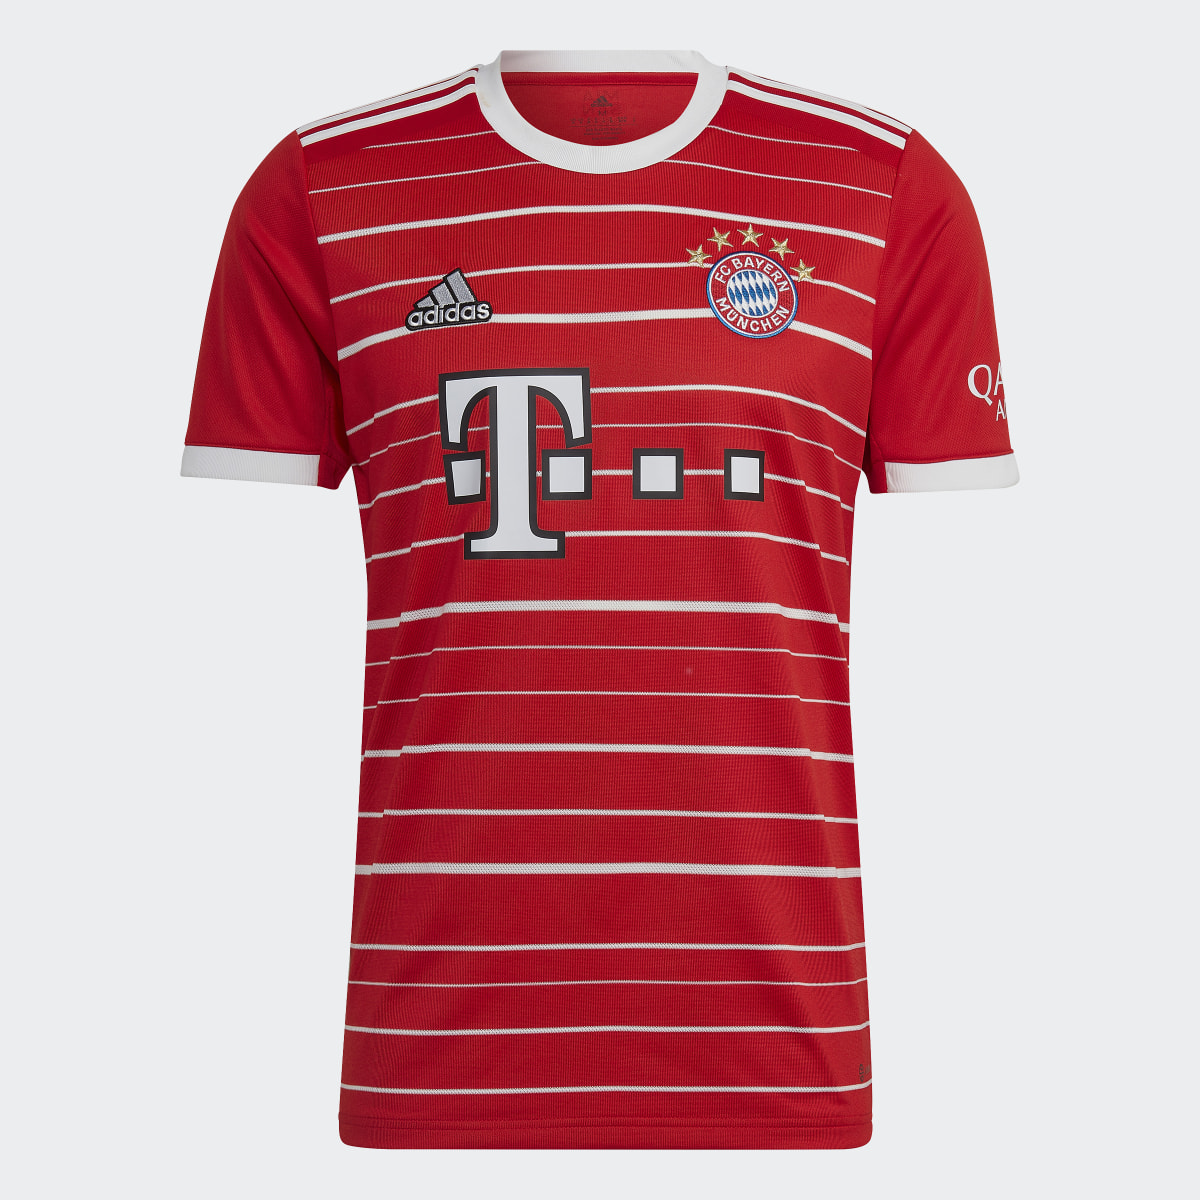 Adidas Camisola Principal 22/23 do FC Bayern München. 4